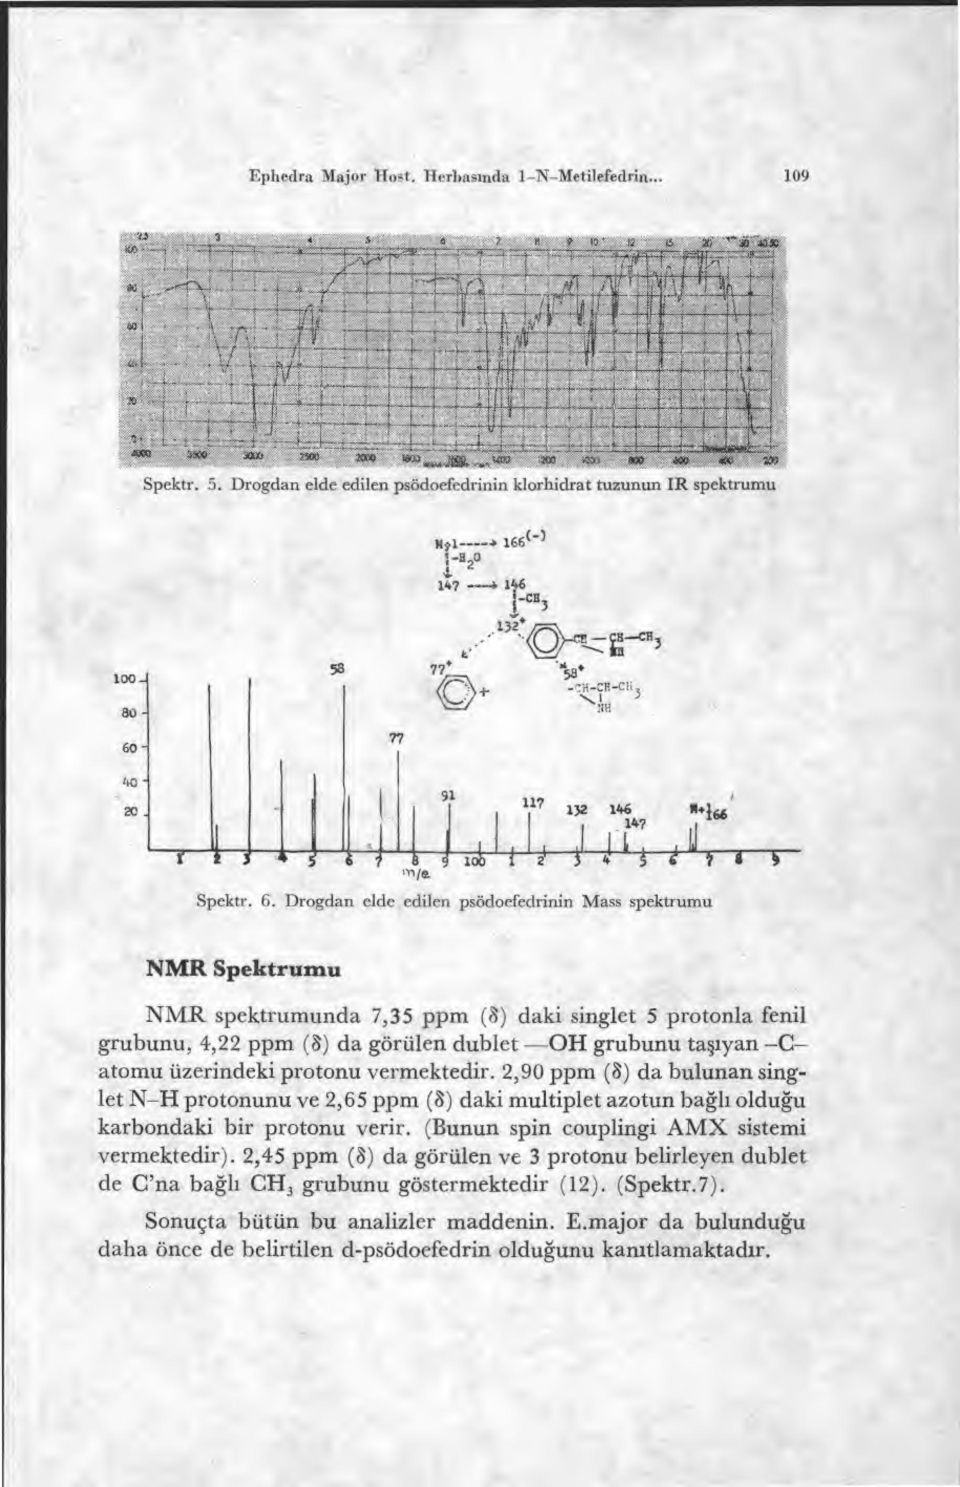 Drogdan elde edilen psödoefedrinin Moss spektrumu Lt-2--1 F-1---5 «* NMR Spektrumu NMR spektrumunda 7,35 ppm () daki singlet 5 protonla fenil grubunu, 4,22 ppm () da görülen dublet OH grubunu ta